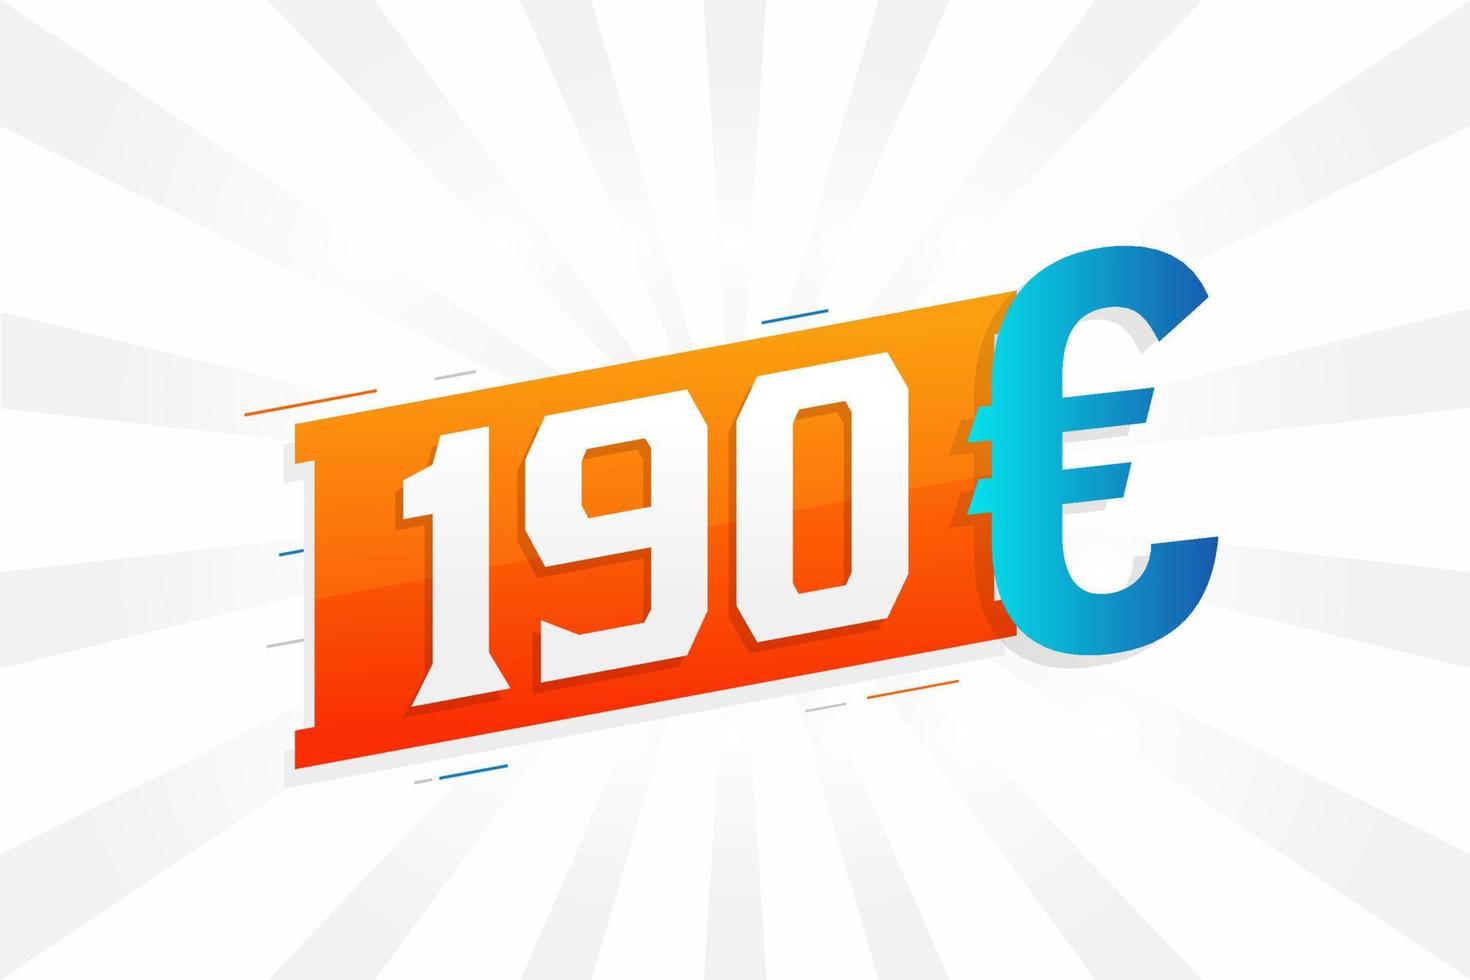 Symbole de texte vectoriel de devise de 190 euros. 190 euros vecteur de stock d'argent de l'union européenne